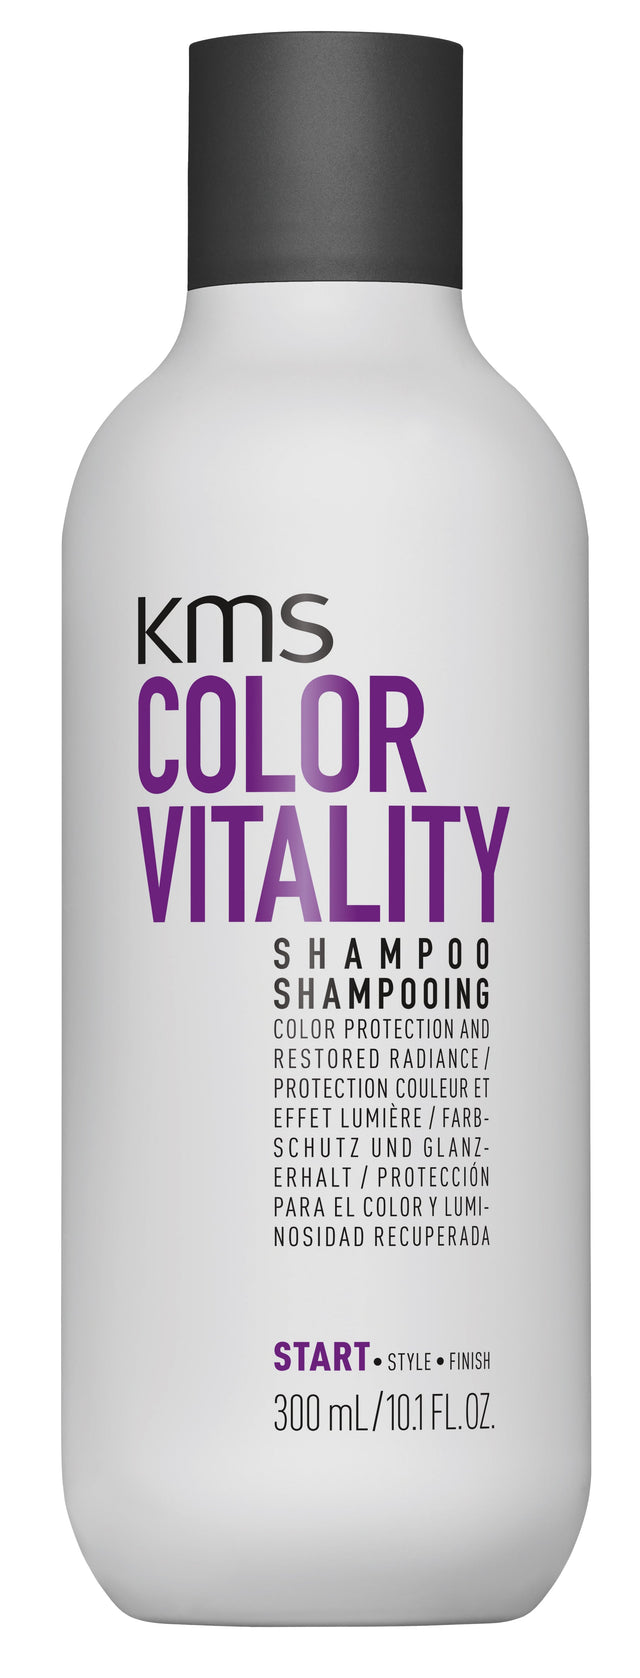 ColorVitality Shampoo Image thumbnail